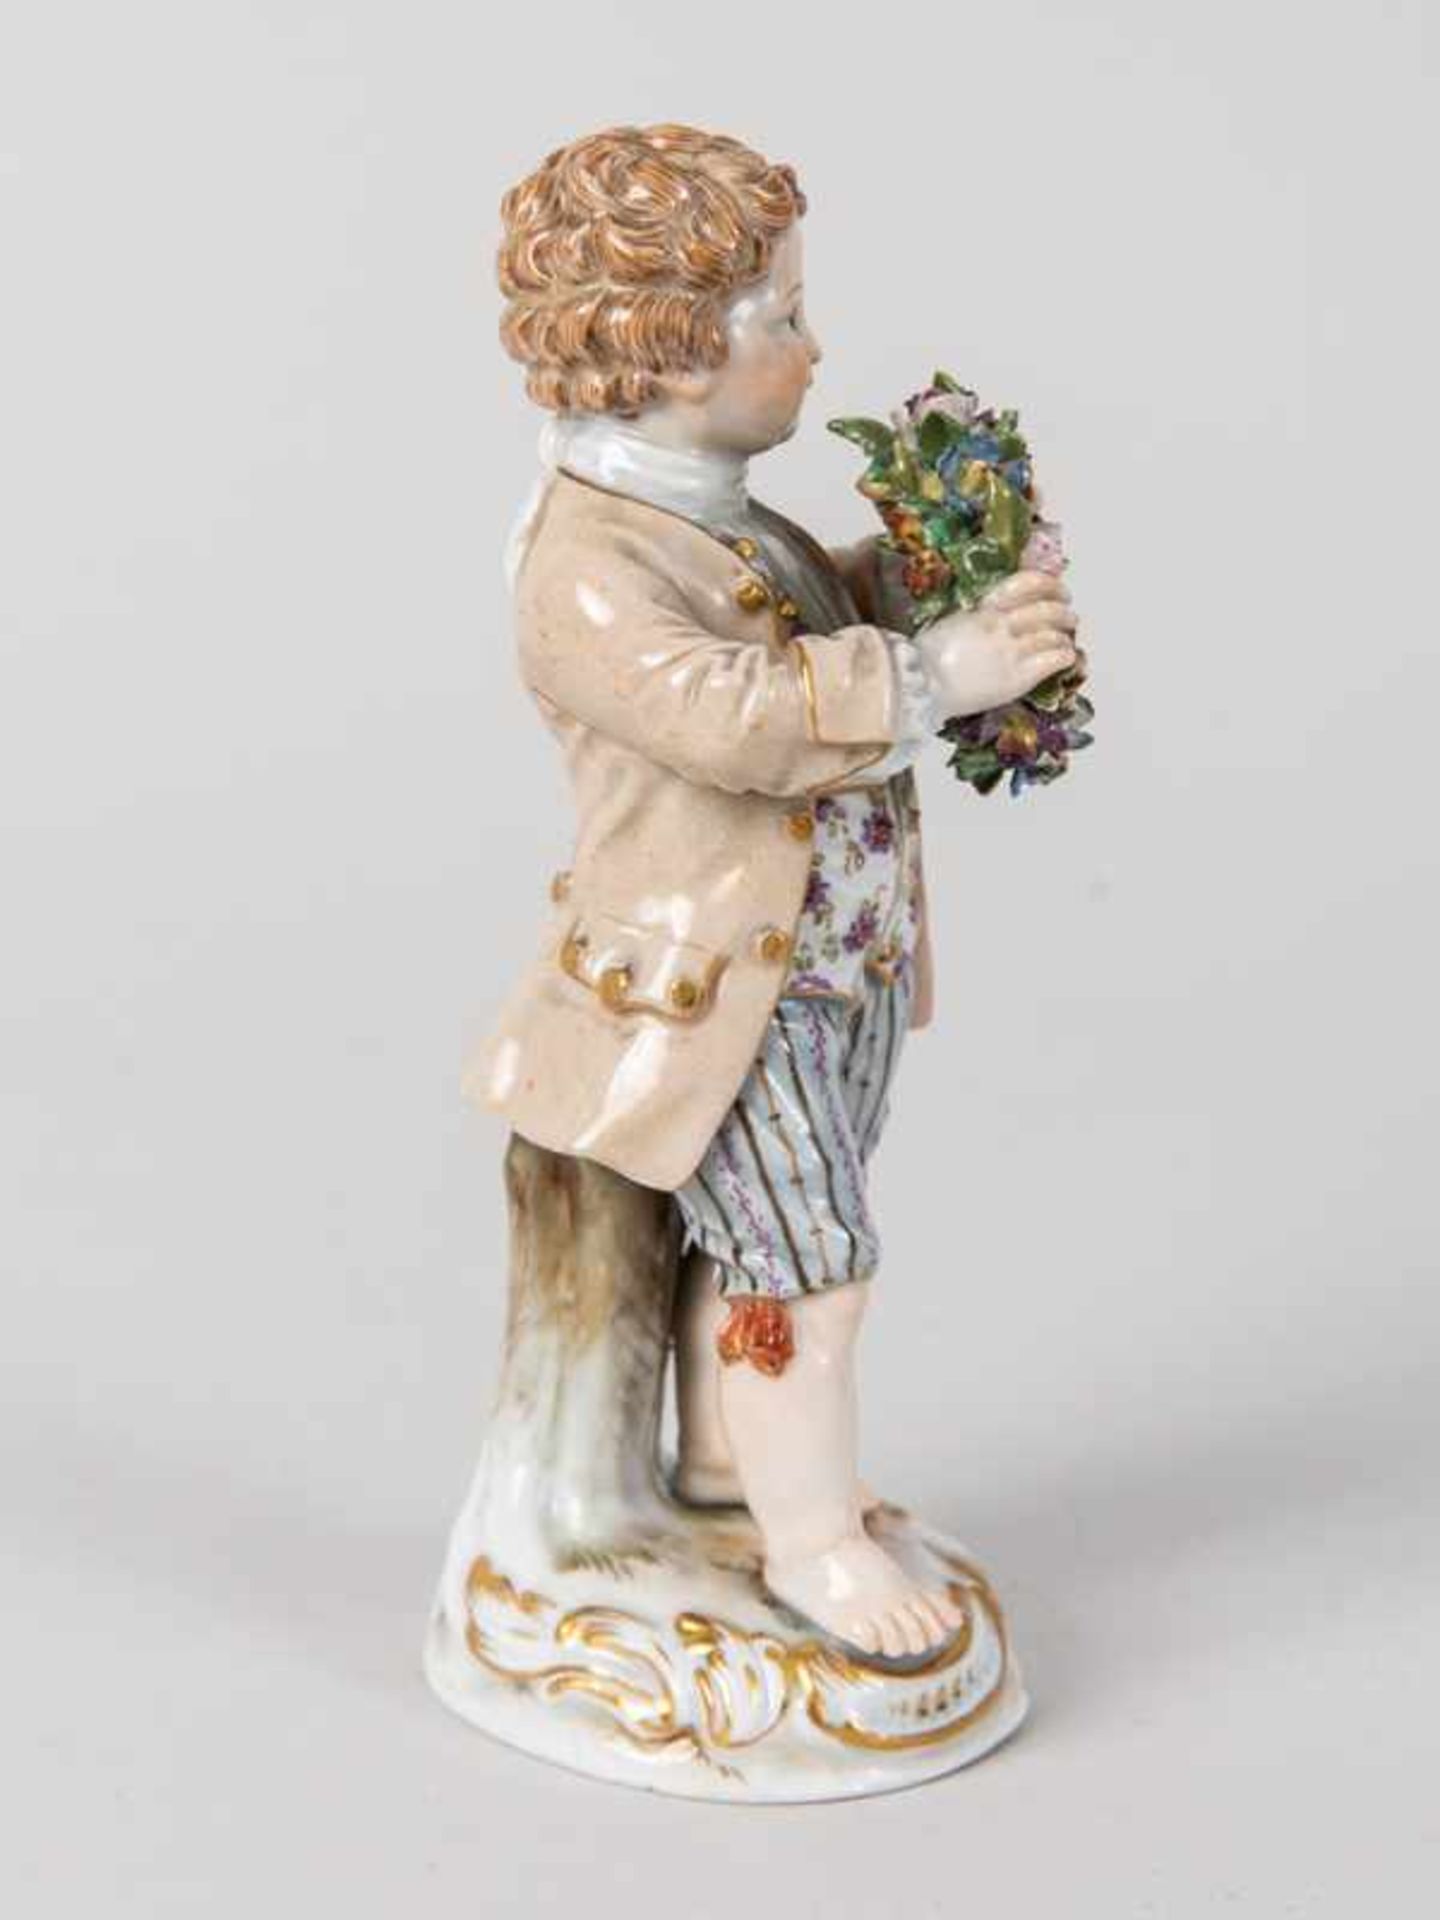 Porzellanfigur "Gärtnerjunge", Meissen, um 1900. - Bild 5 aus 7